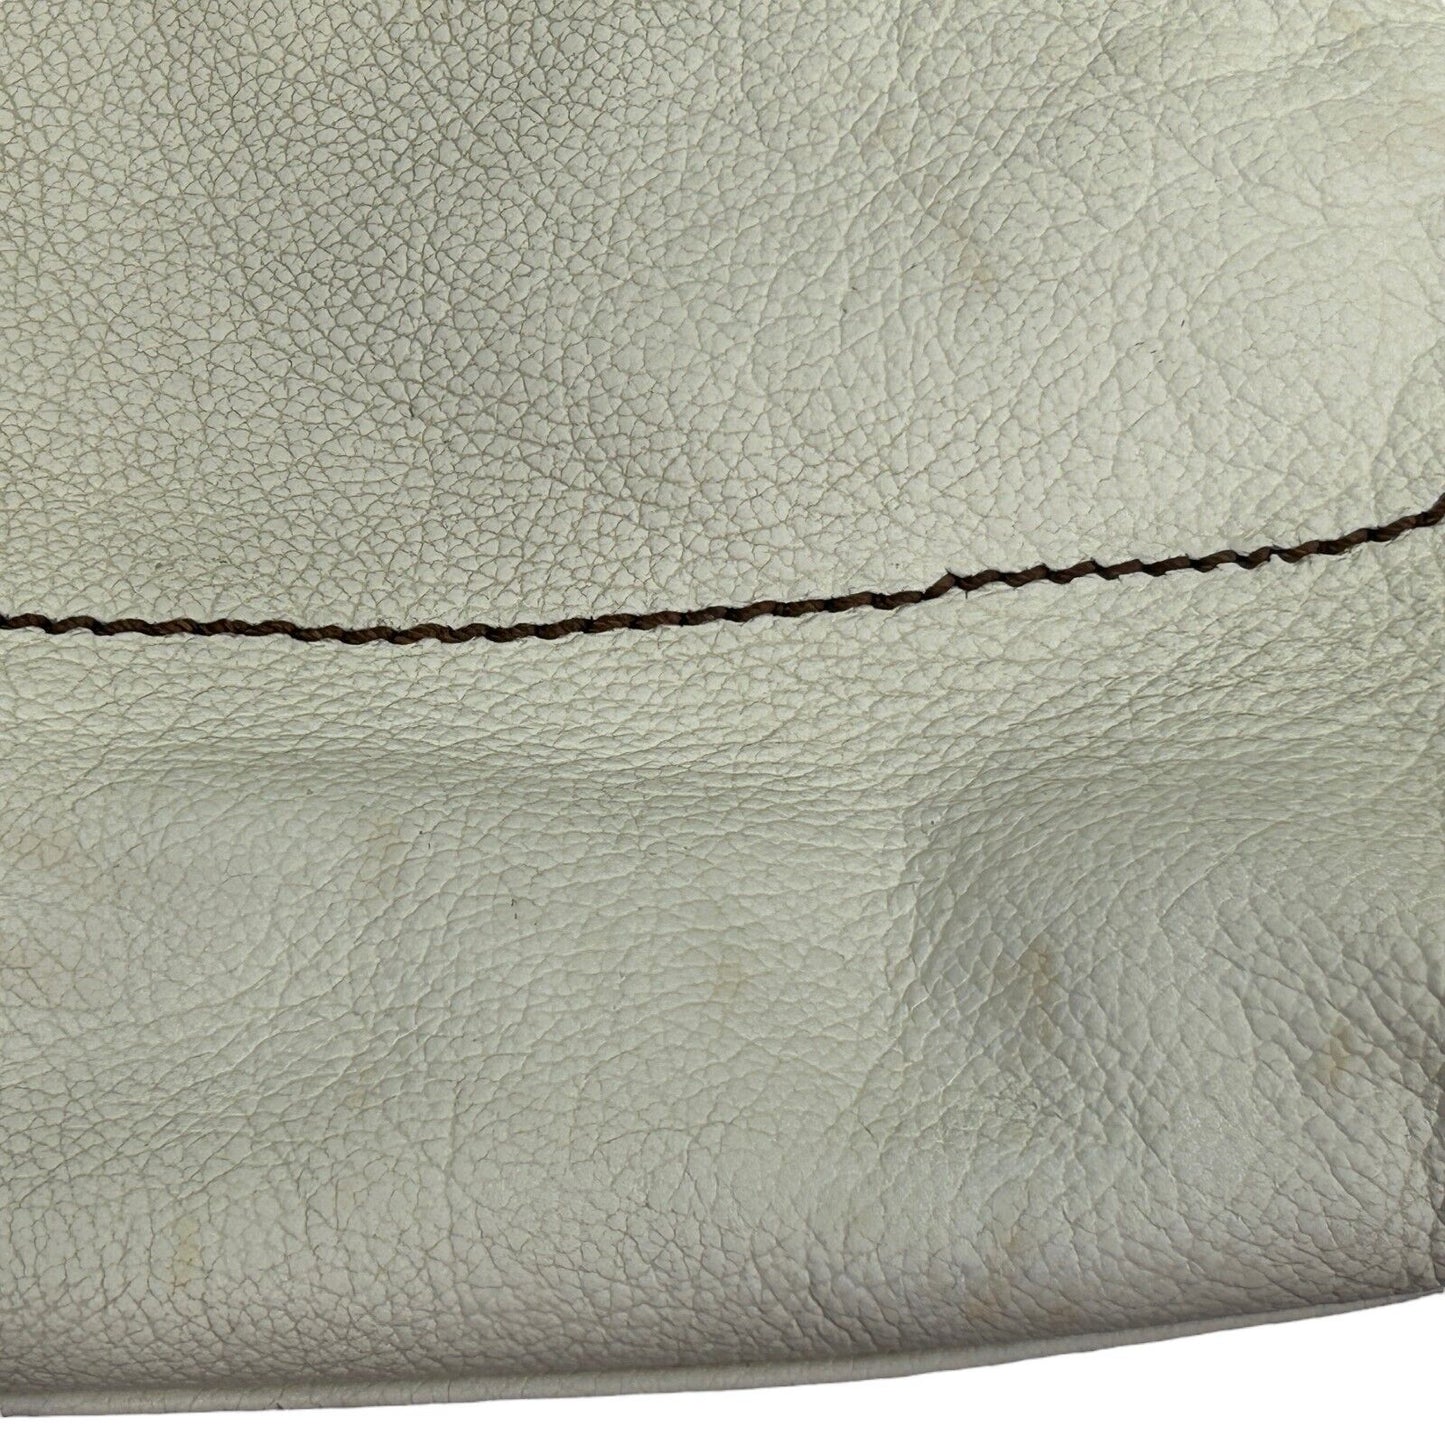 Fossil Keely - Bolso bandolera grande de piel granulada para mujer, color blanco hueso y marrón